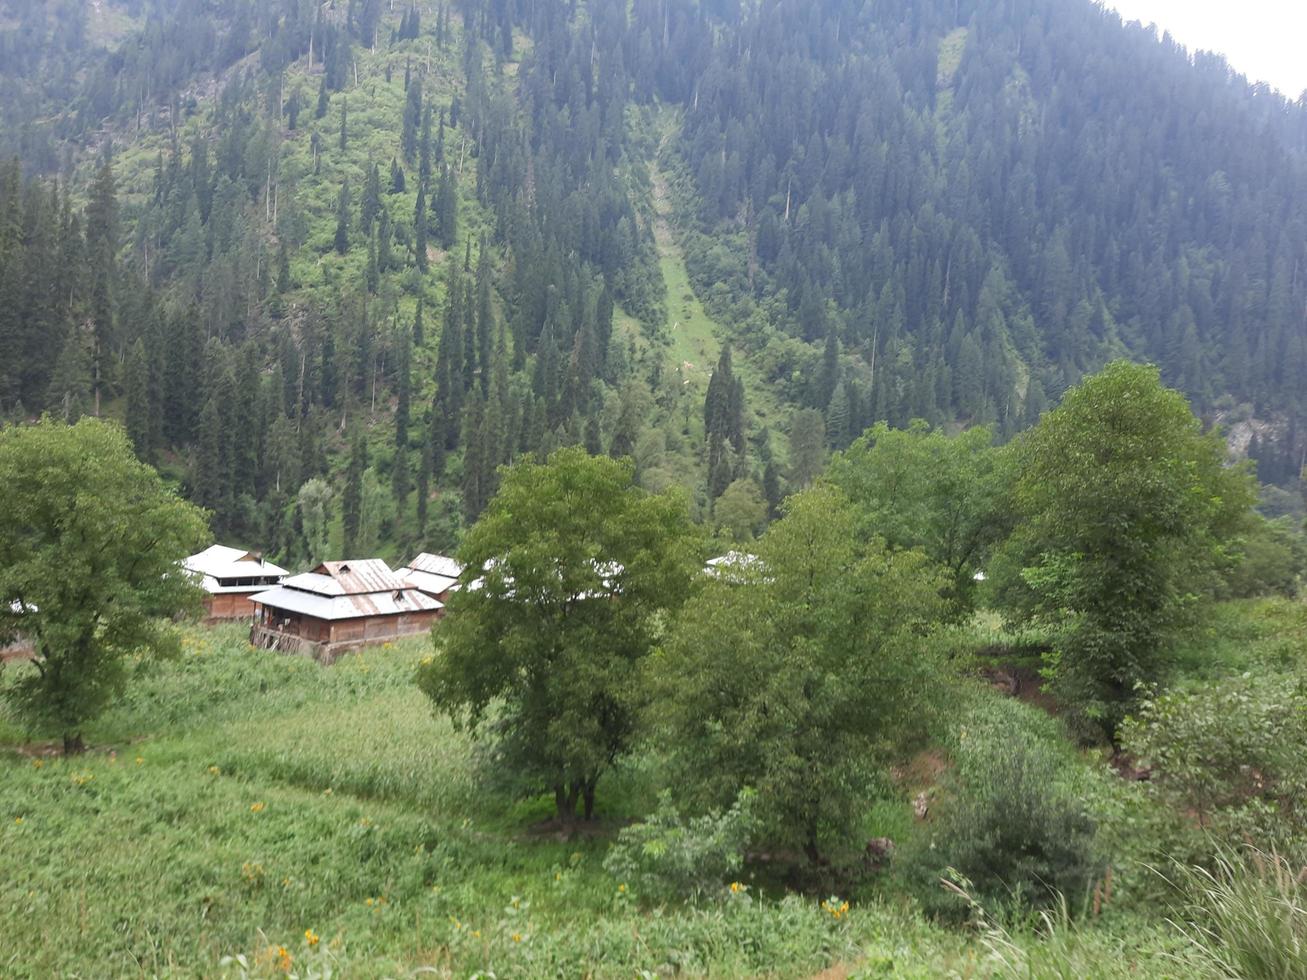 kaschmir, pakistan, august 2022 - kaschmir ist die schönste region der welt, die berühmt ist für ihre grünen täler, schönen bäume, hohen berge und fließenden quellen. foto